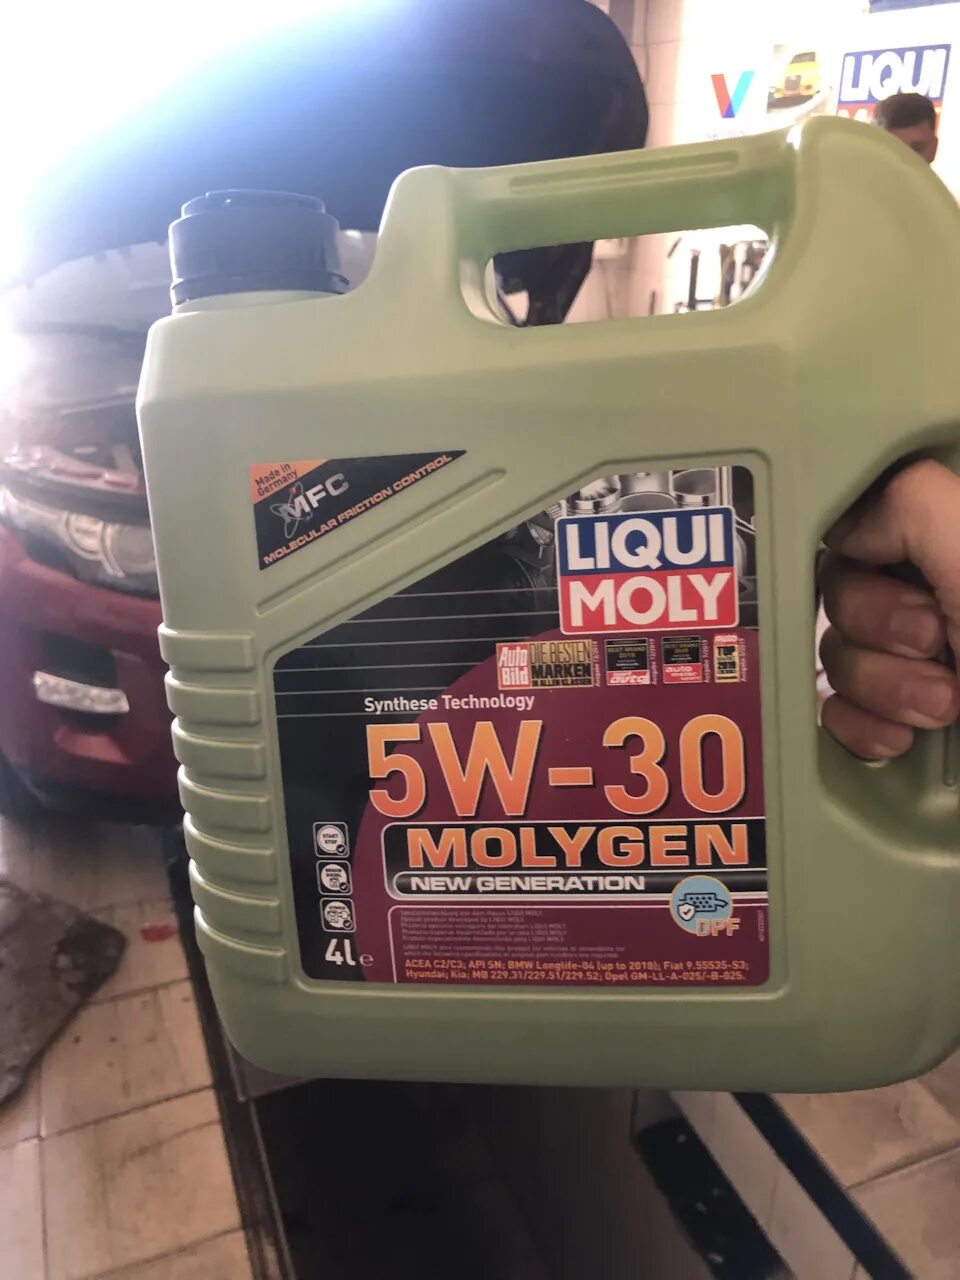 Liqui Moly 5w30. Ликви моли молиген 5w30. Моторное масло Liqui Moly Molygen 5w30 Diesel 4l. Liqui Moly Molygen 5w30 4л дизель. Liqui moly 5w 30 купить